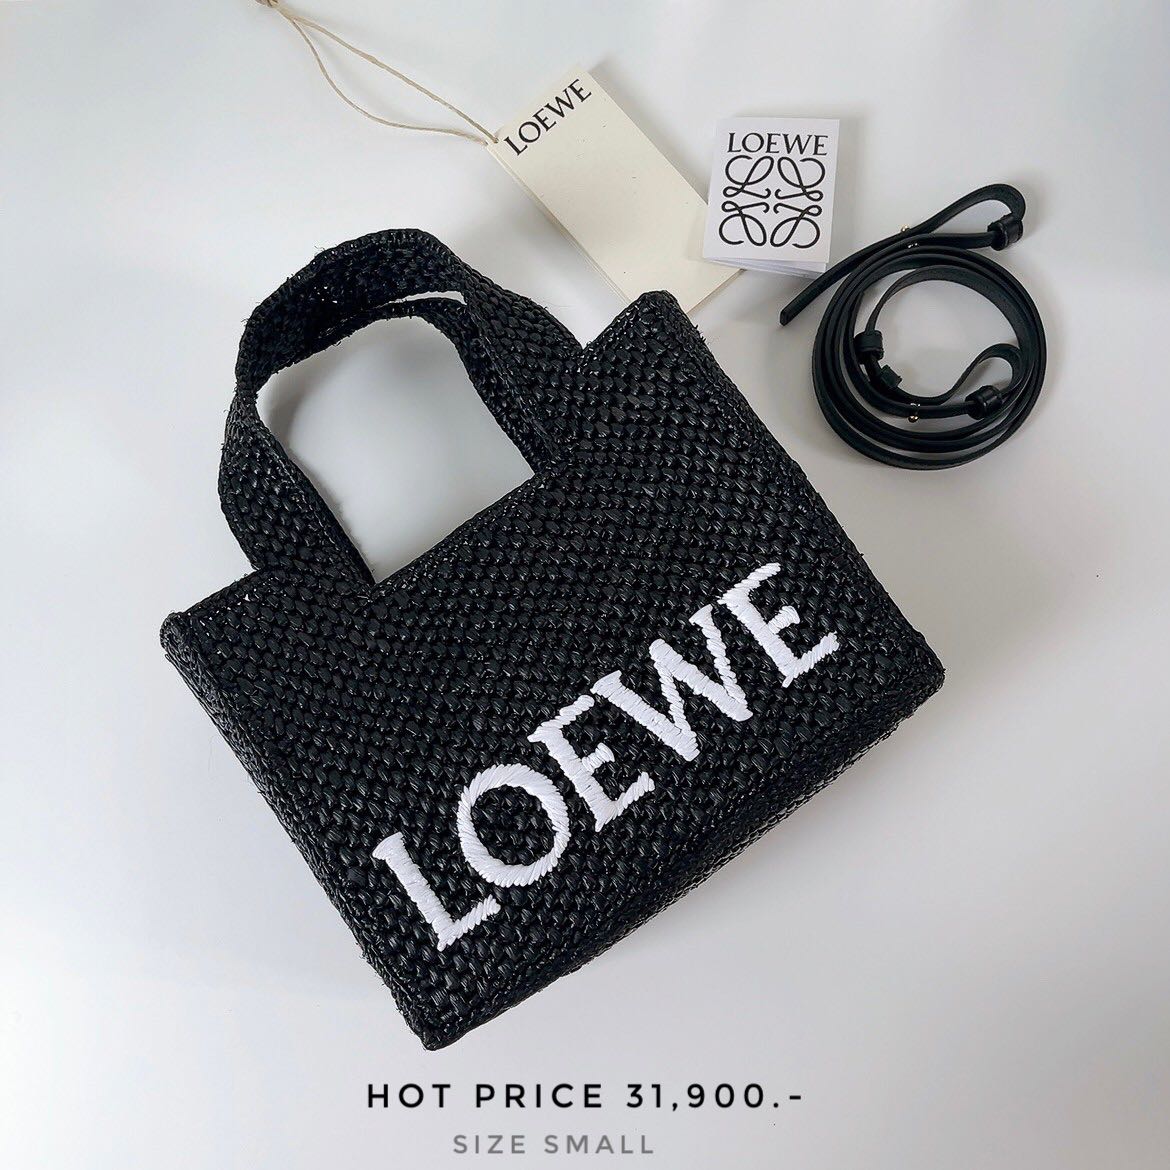 Loewe font raffia tote bag by Loewe